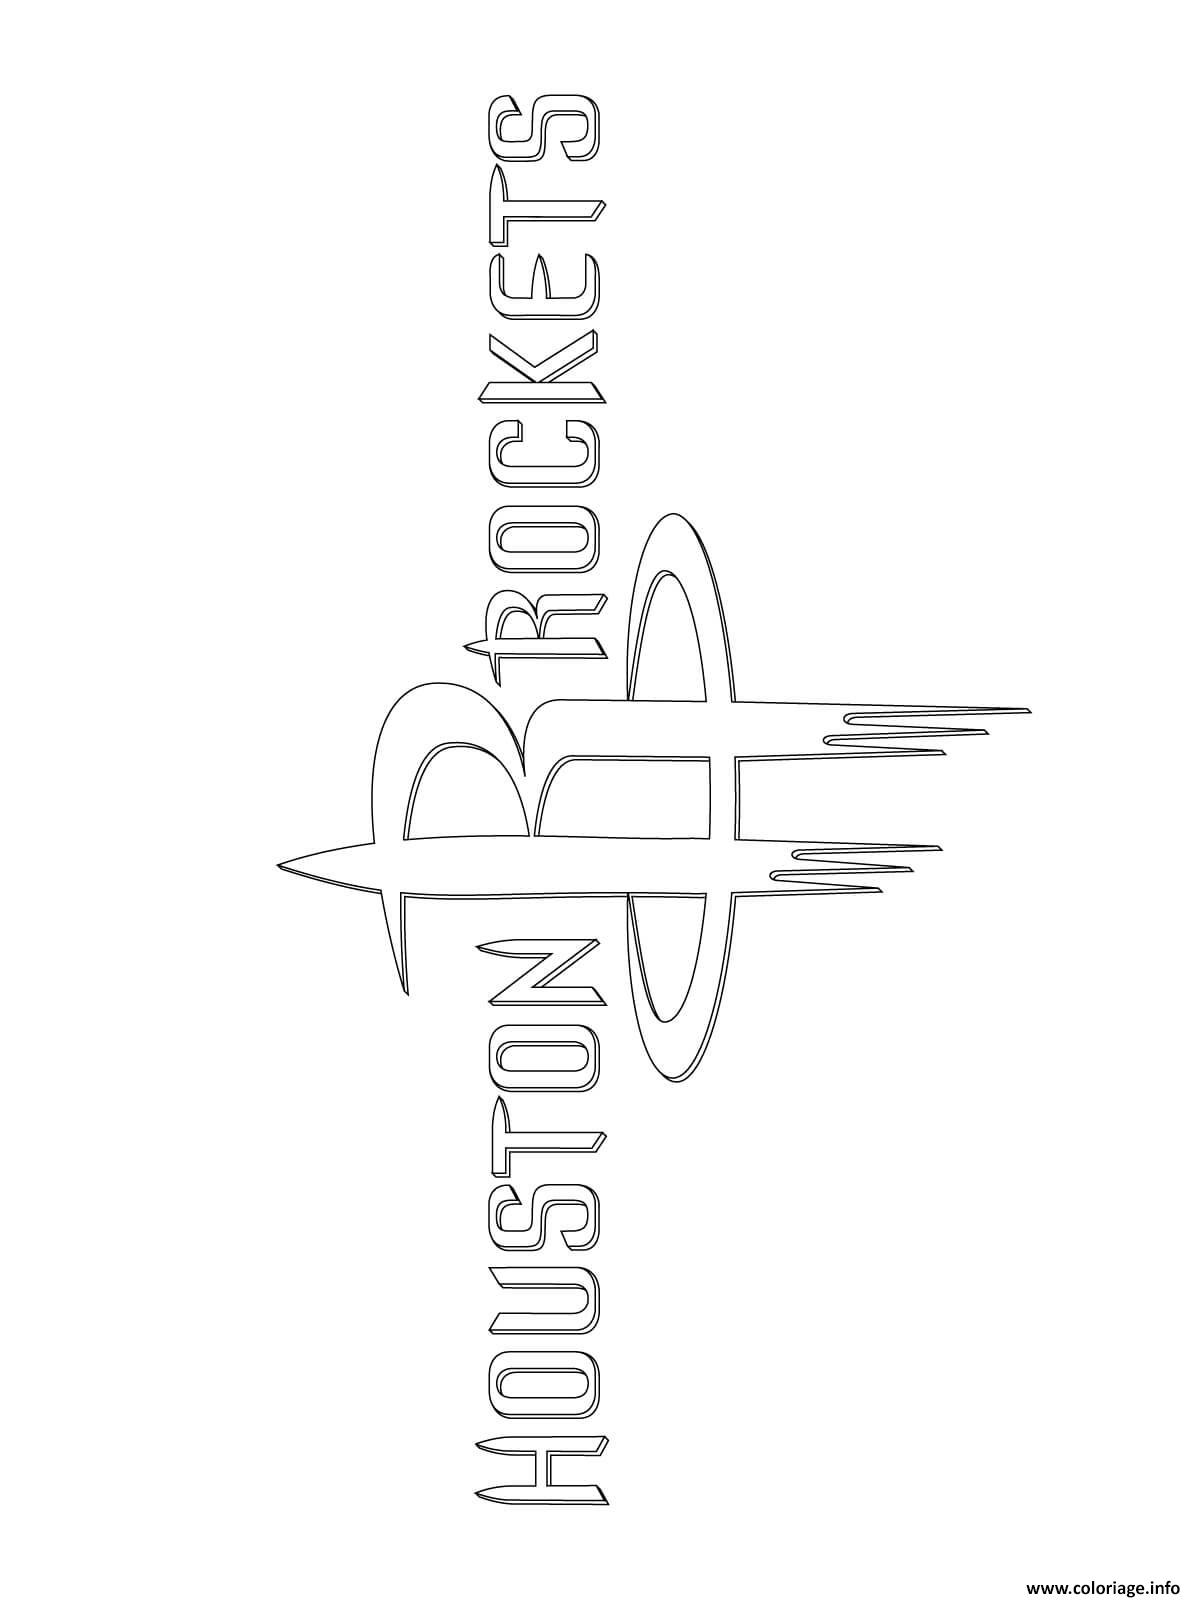 Coloriage Houston Rockets Logo Nba Sport Dessin à Imprimer